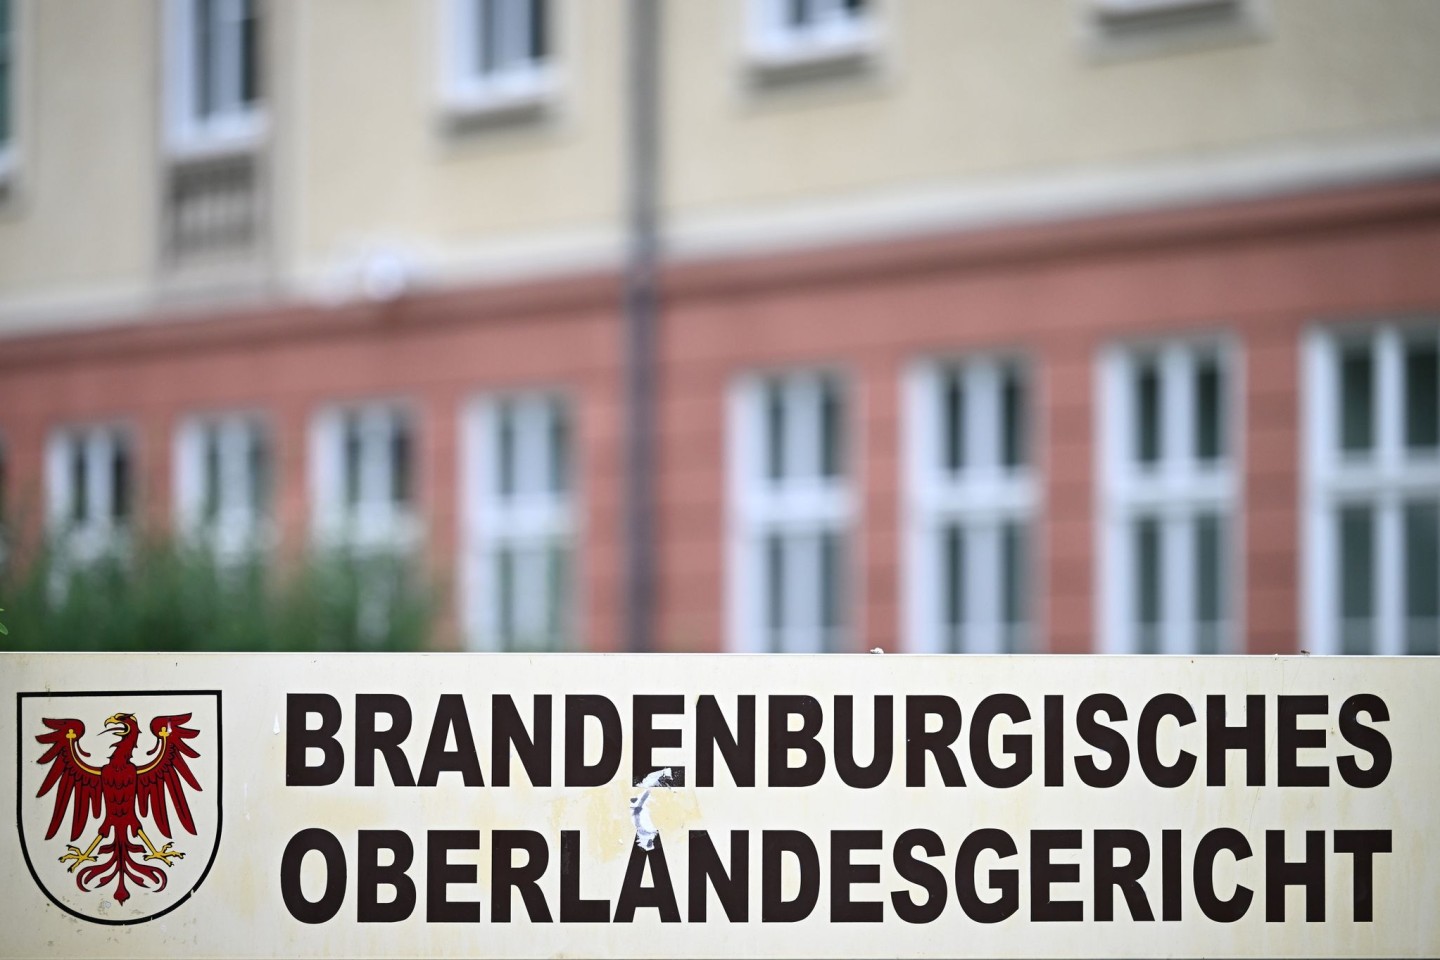 Der 5. Senat des Brandenburger Oberlandesgerichts hat entschieden, dass eine Familie ein von ihr ersteigertes Grundstück zurückgeben muss.